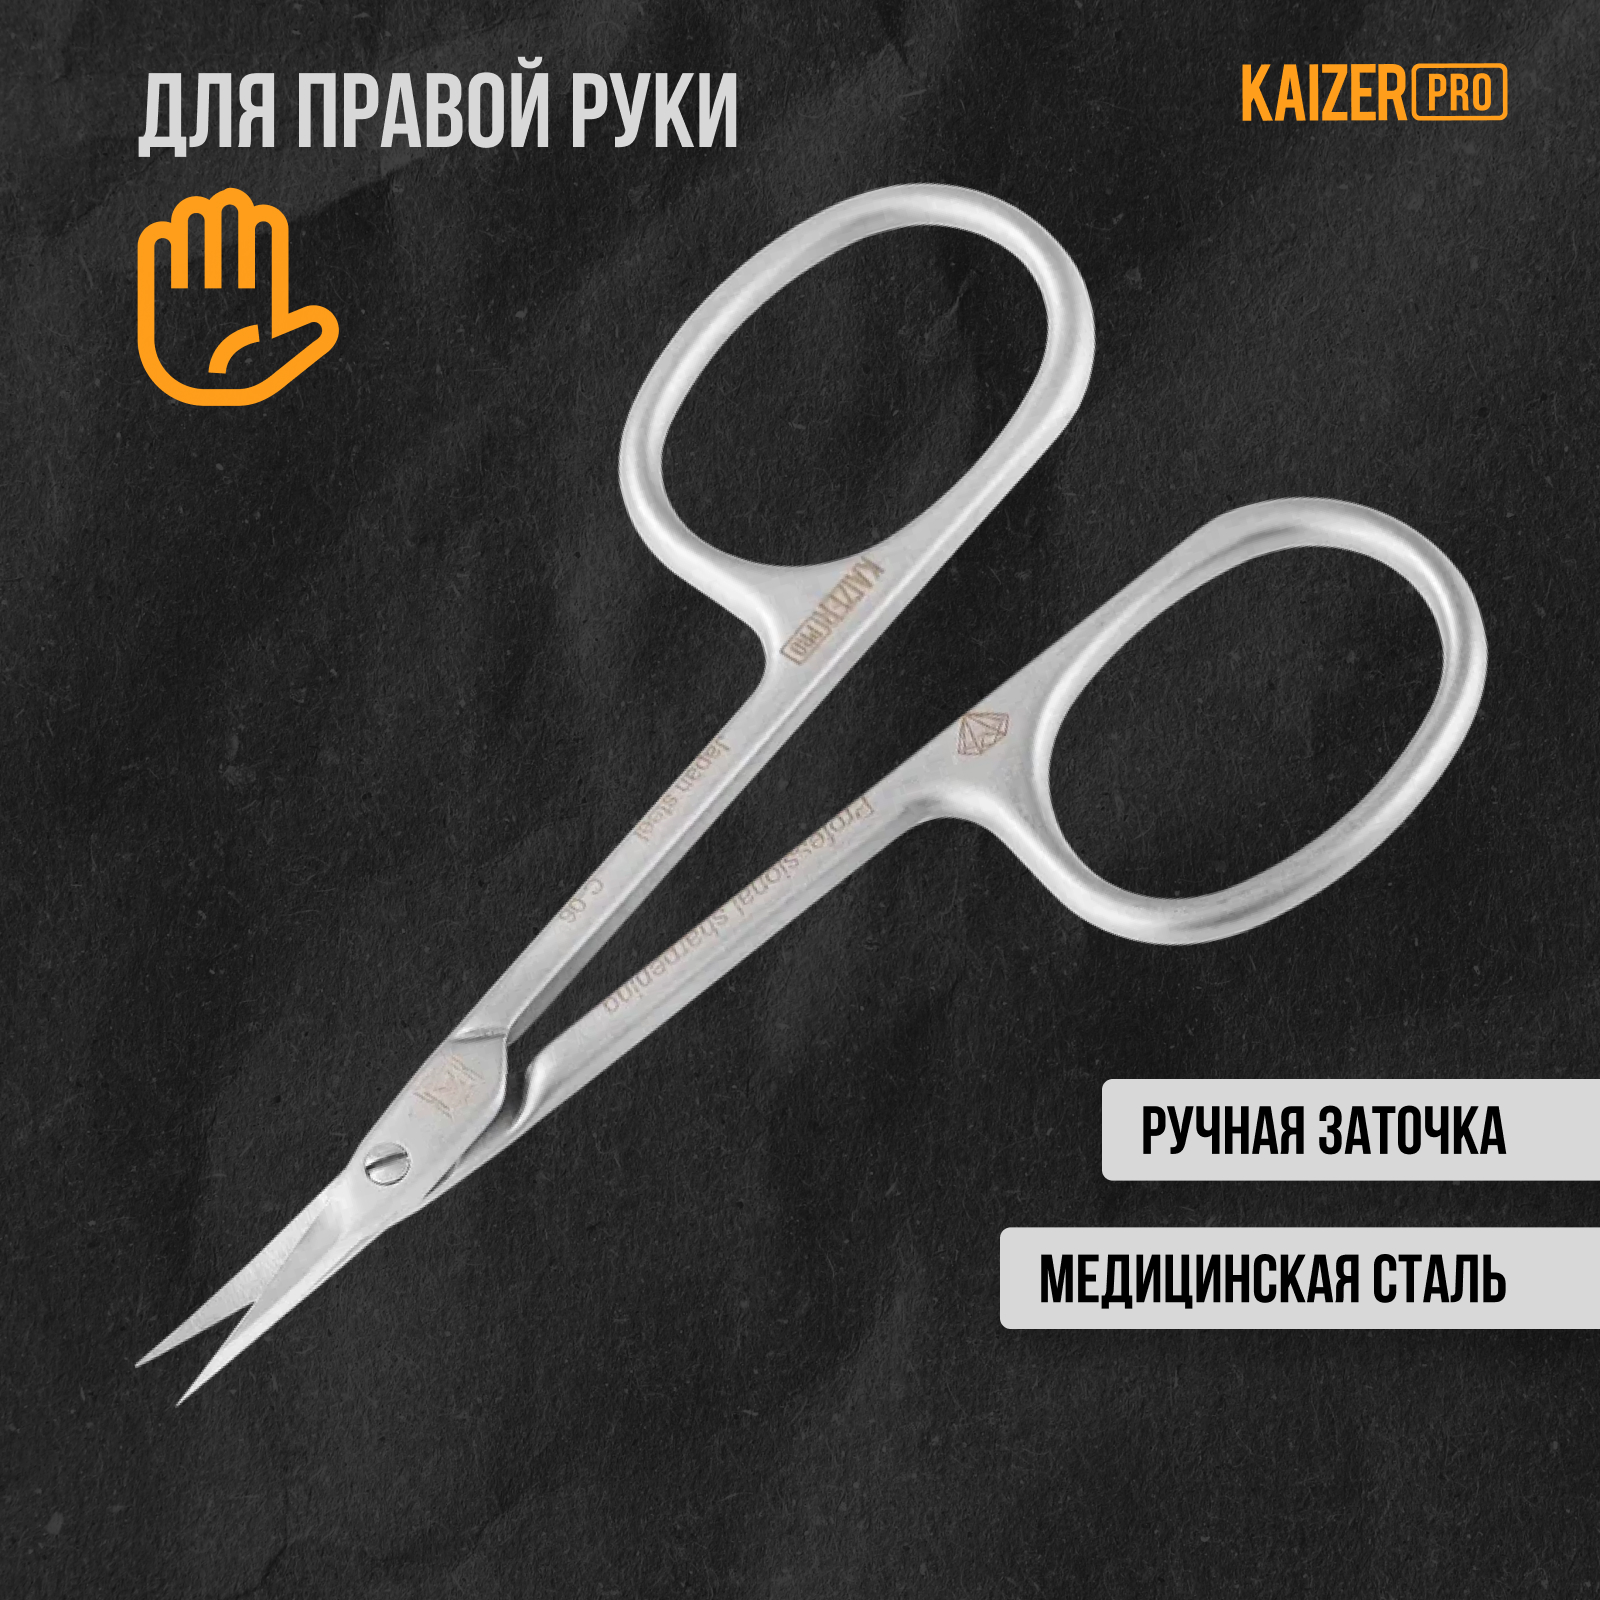 Ножницы маникюрные Kaizer pro для кутикулы профессиональн.заточка 90мм цвет сатин хром